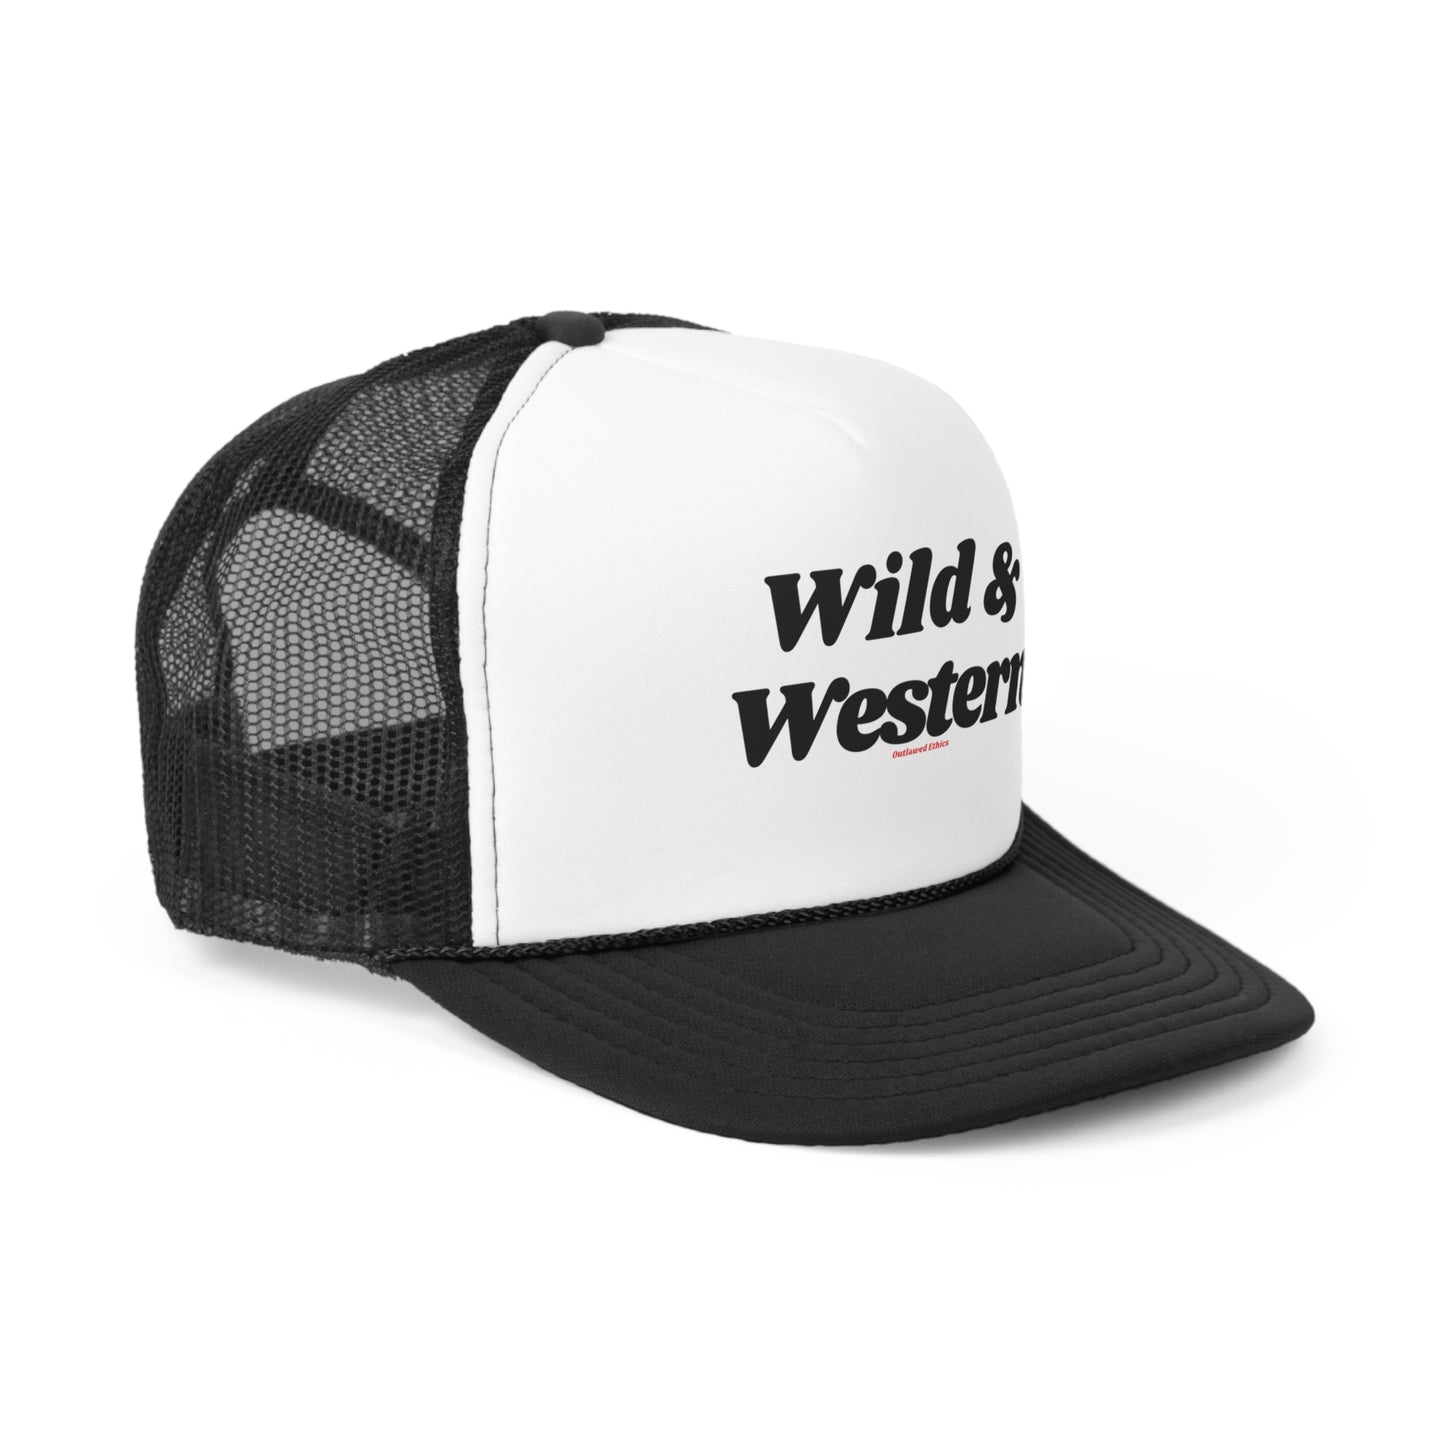 Wild & Western Trucker Hat